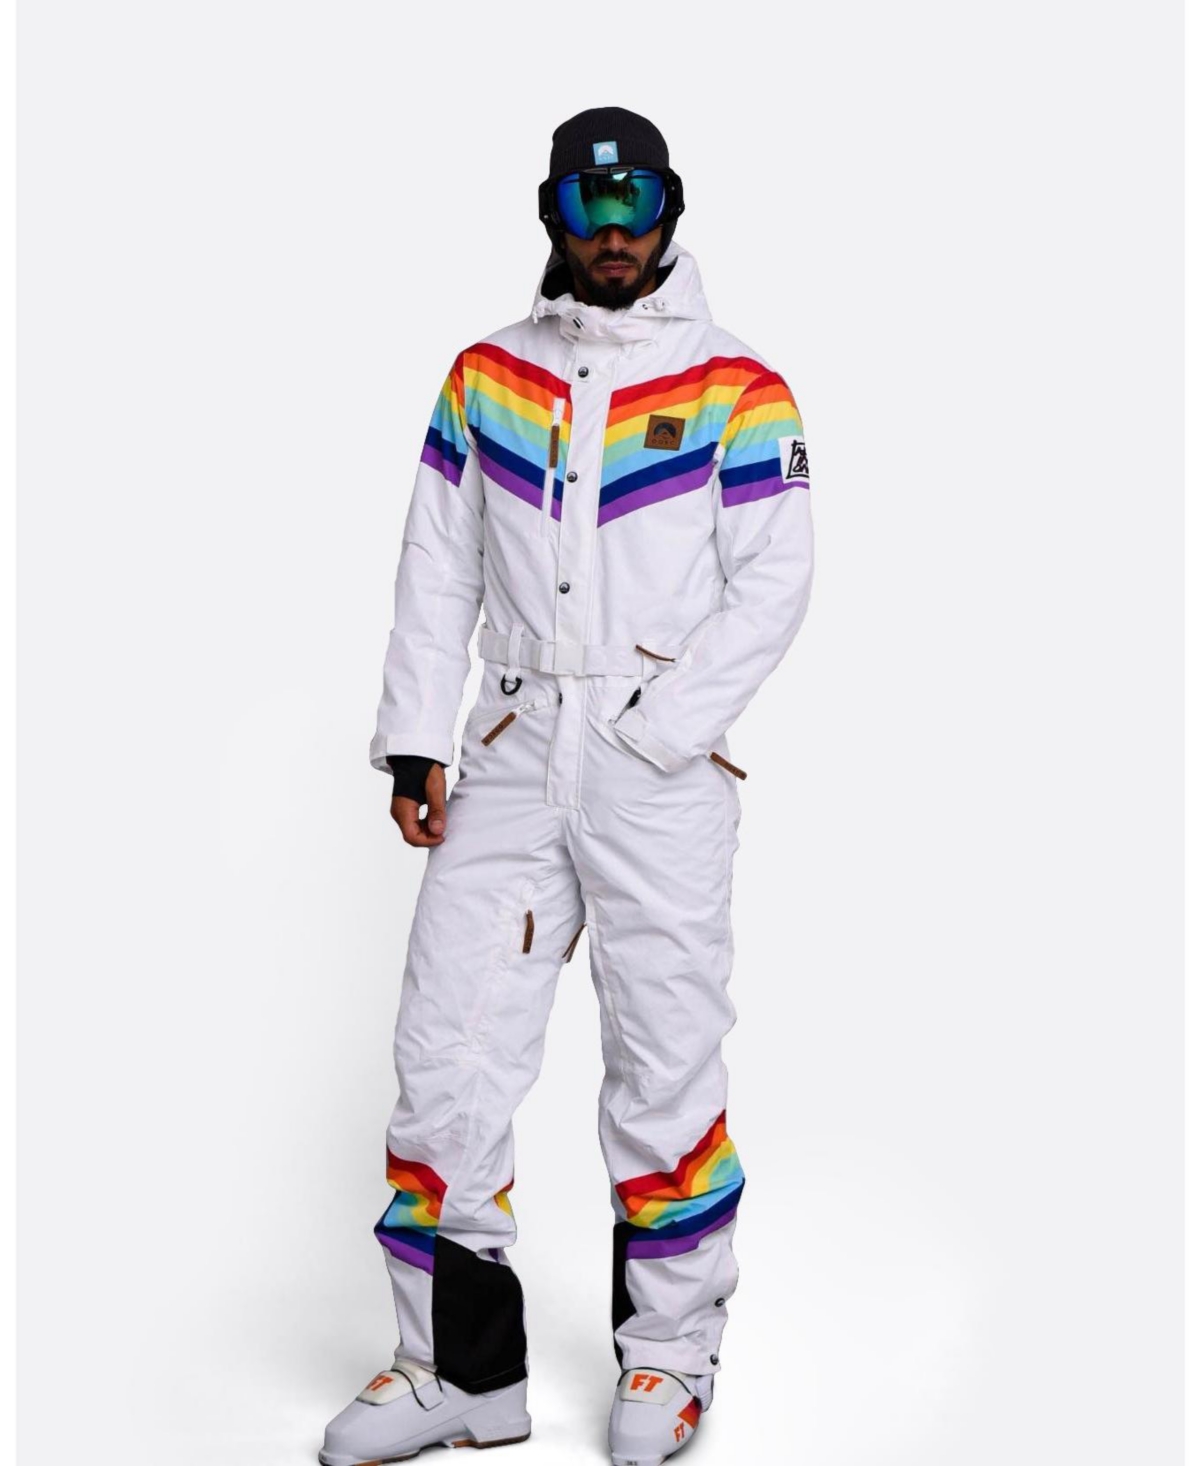 Men's Rainbow Road Ski Suit - Multi